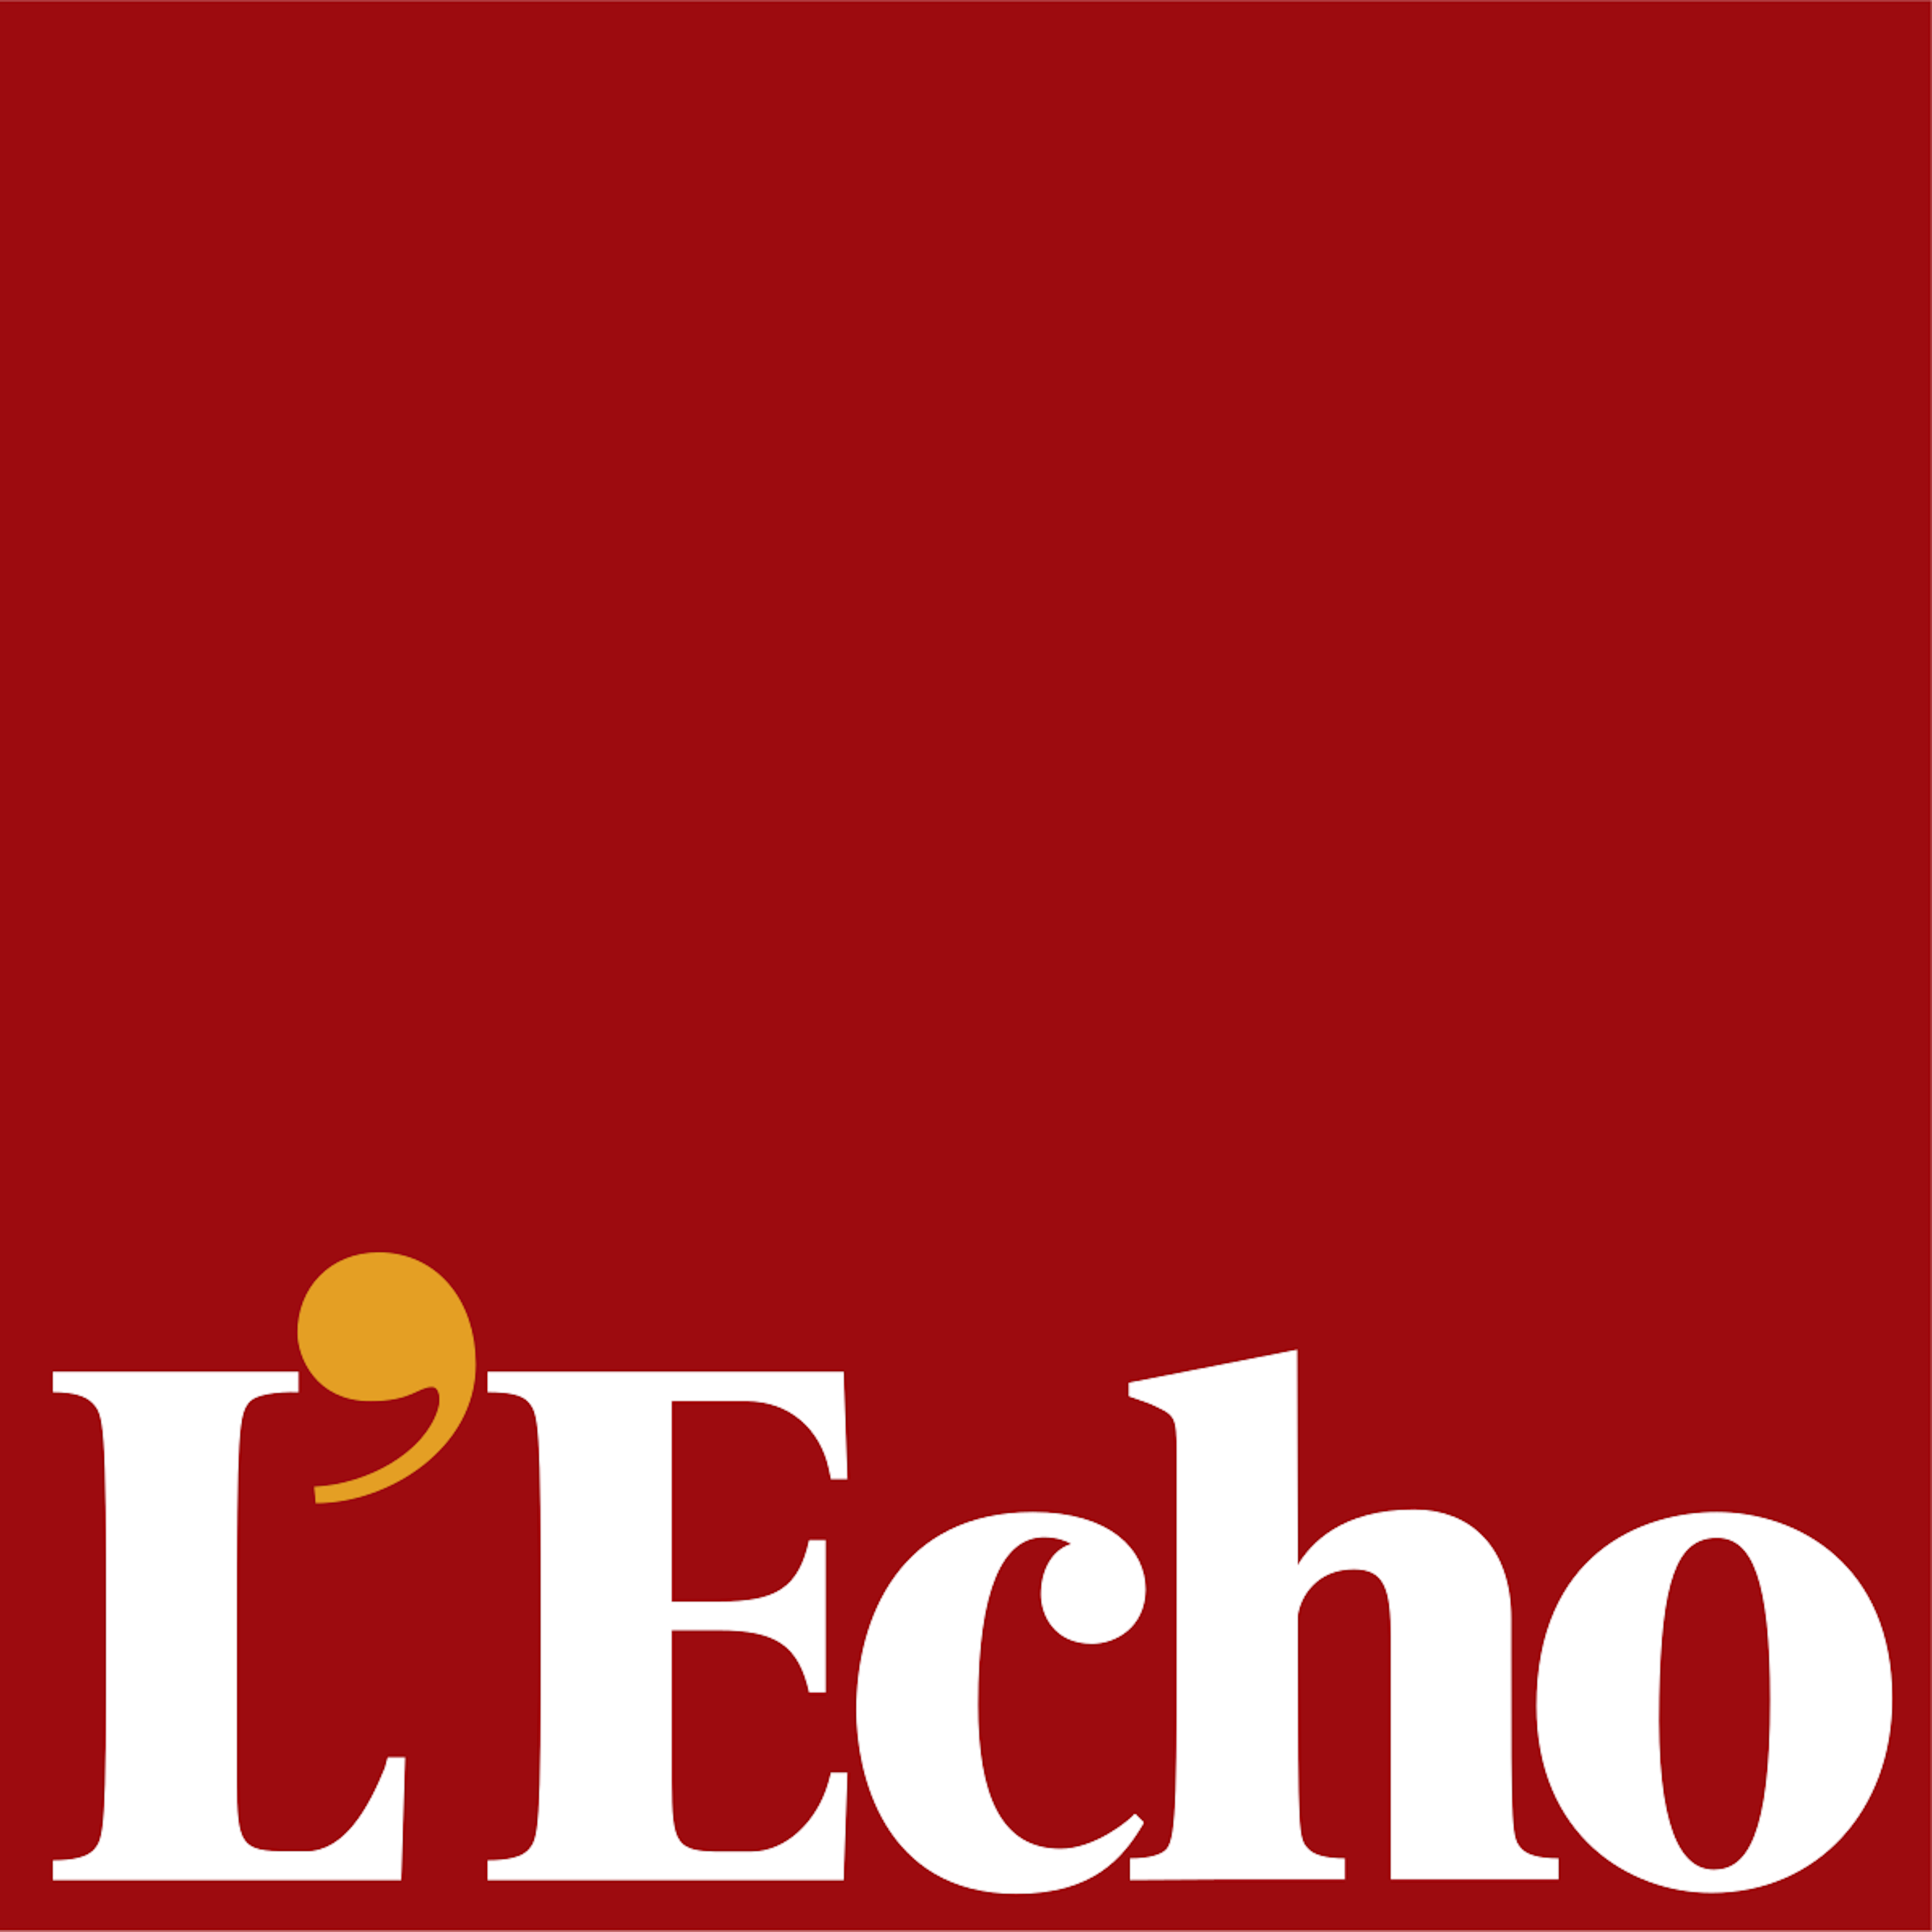 Le logo du journal l'Écho